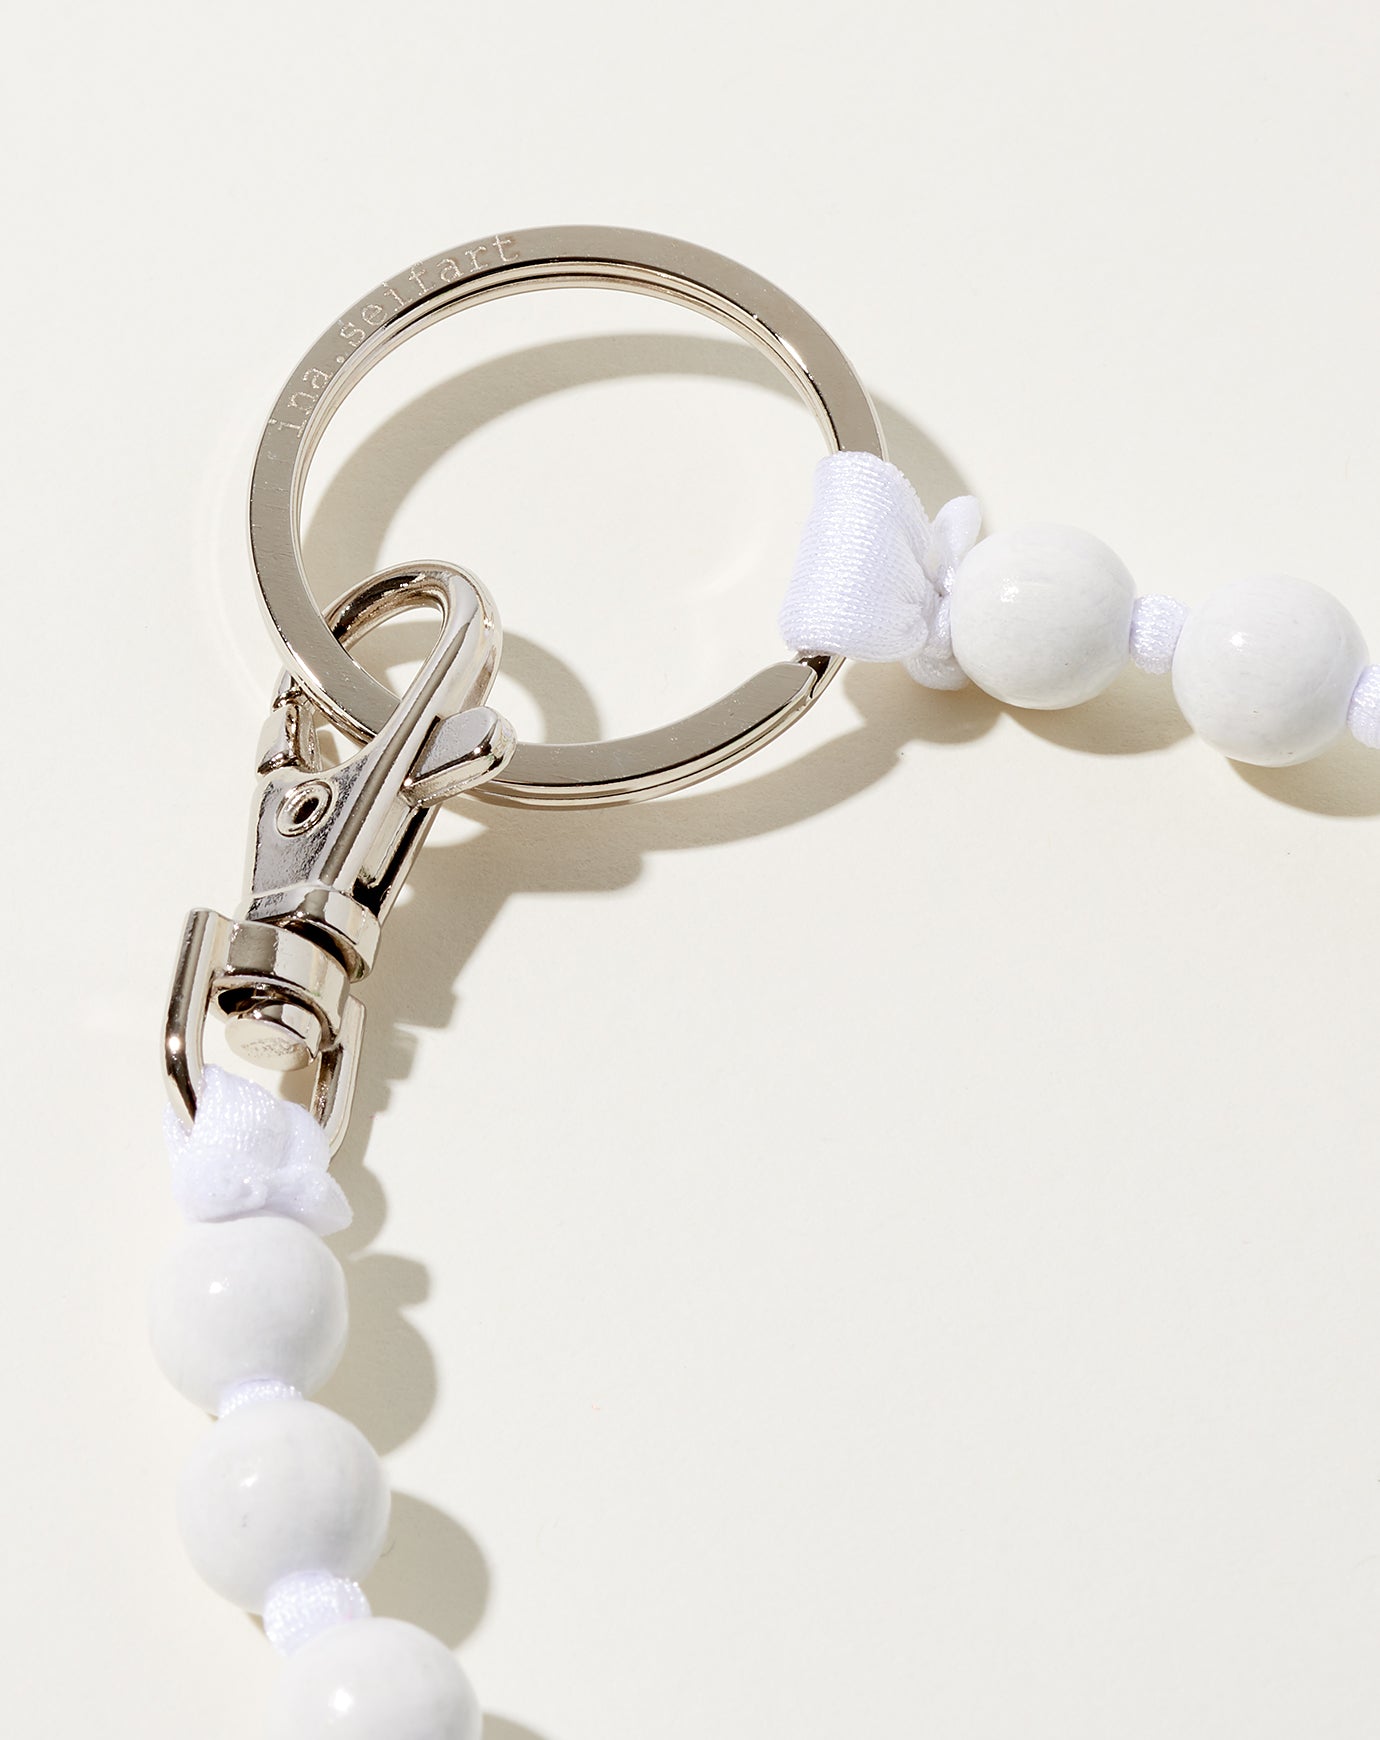 Ina Seifart Perlen Long Keyholder in White on White